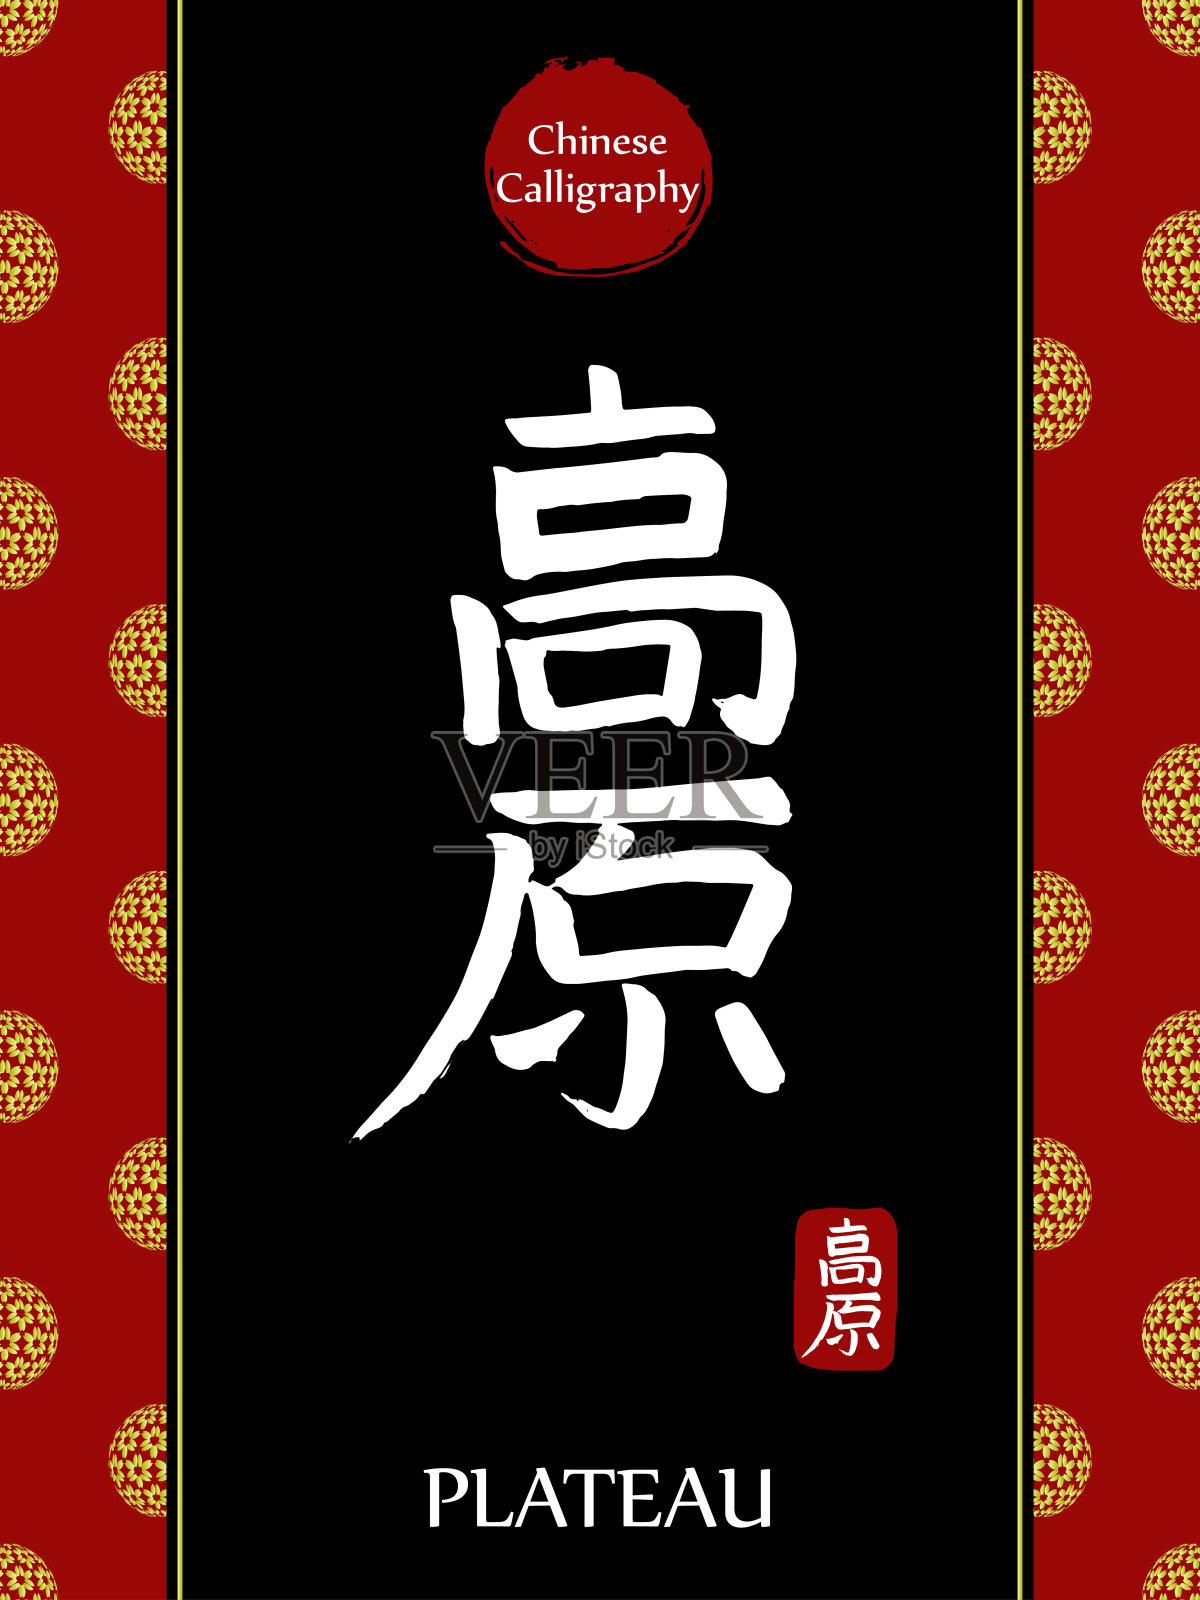 中国书法象形翻译:高原。亚洲金花球农历新年图案。向量中国符号在黑色背景。手绘图画文字。毛笔书法插画图片素材